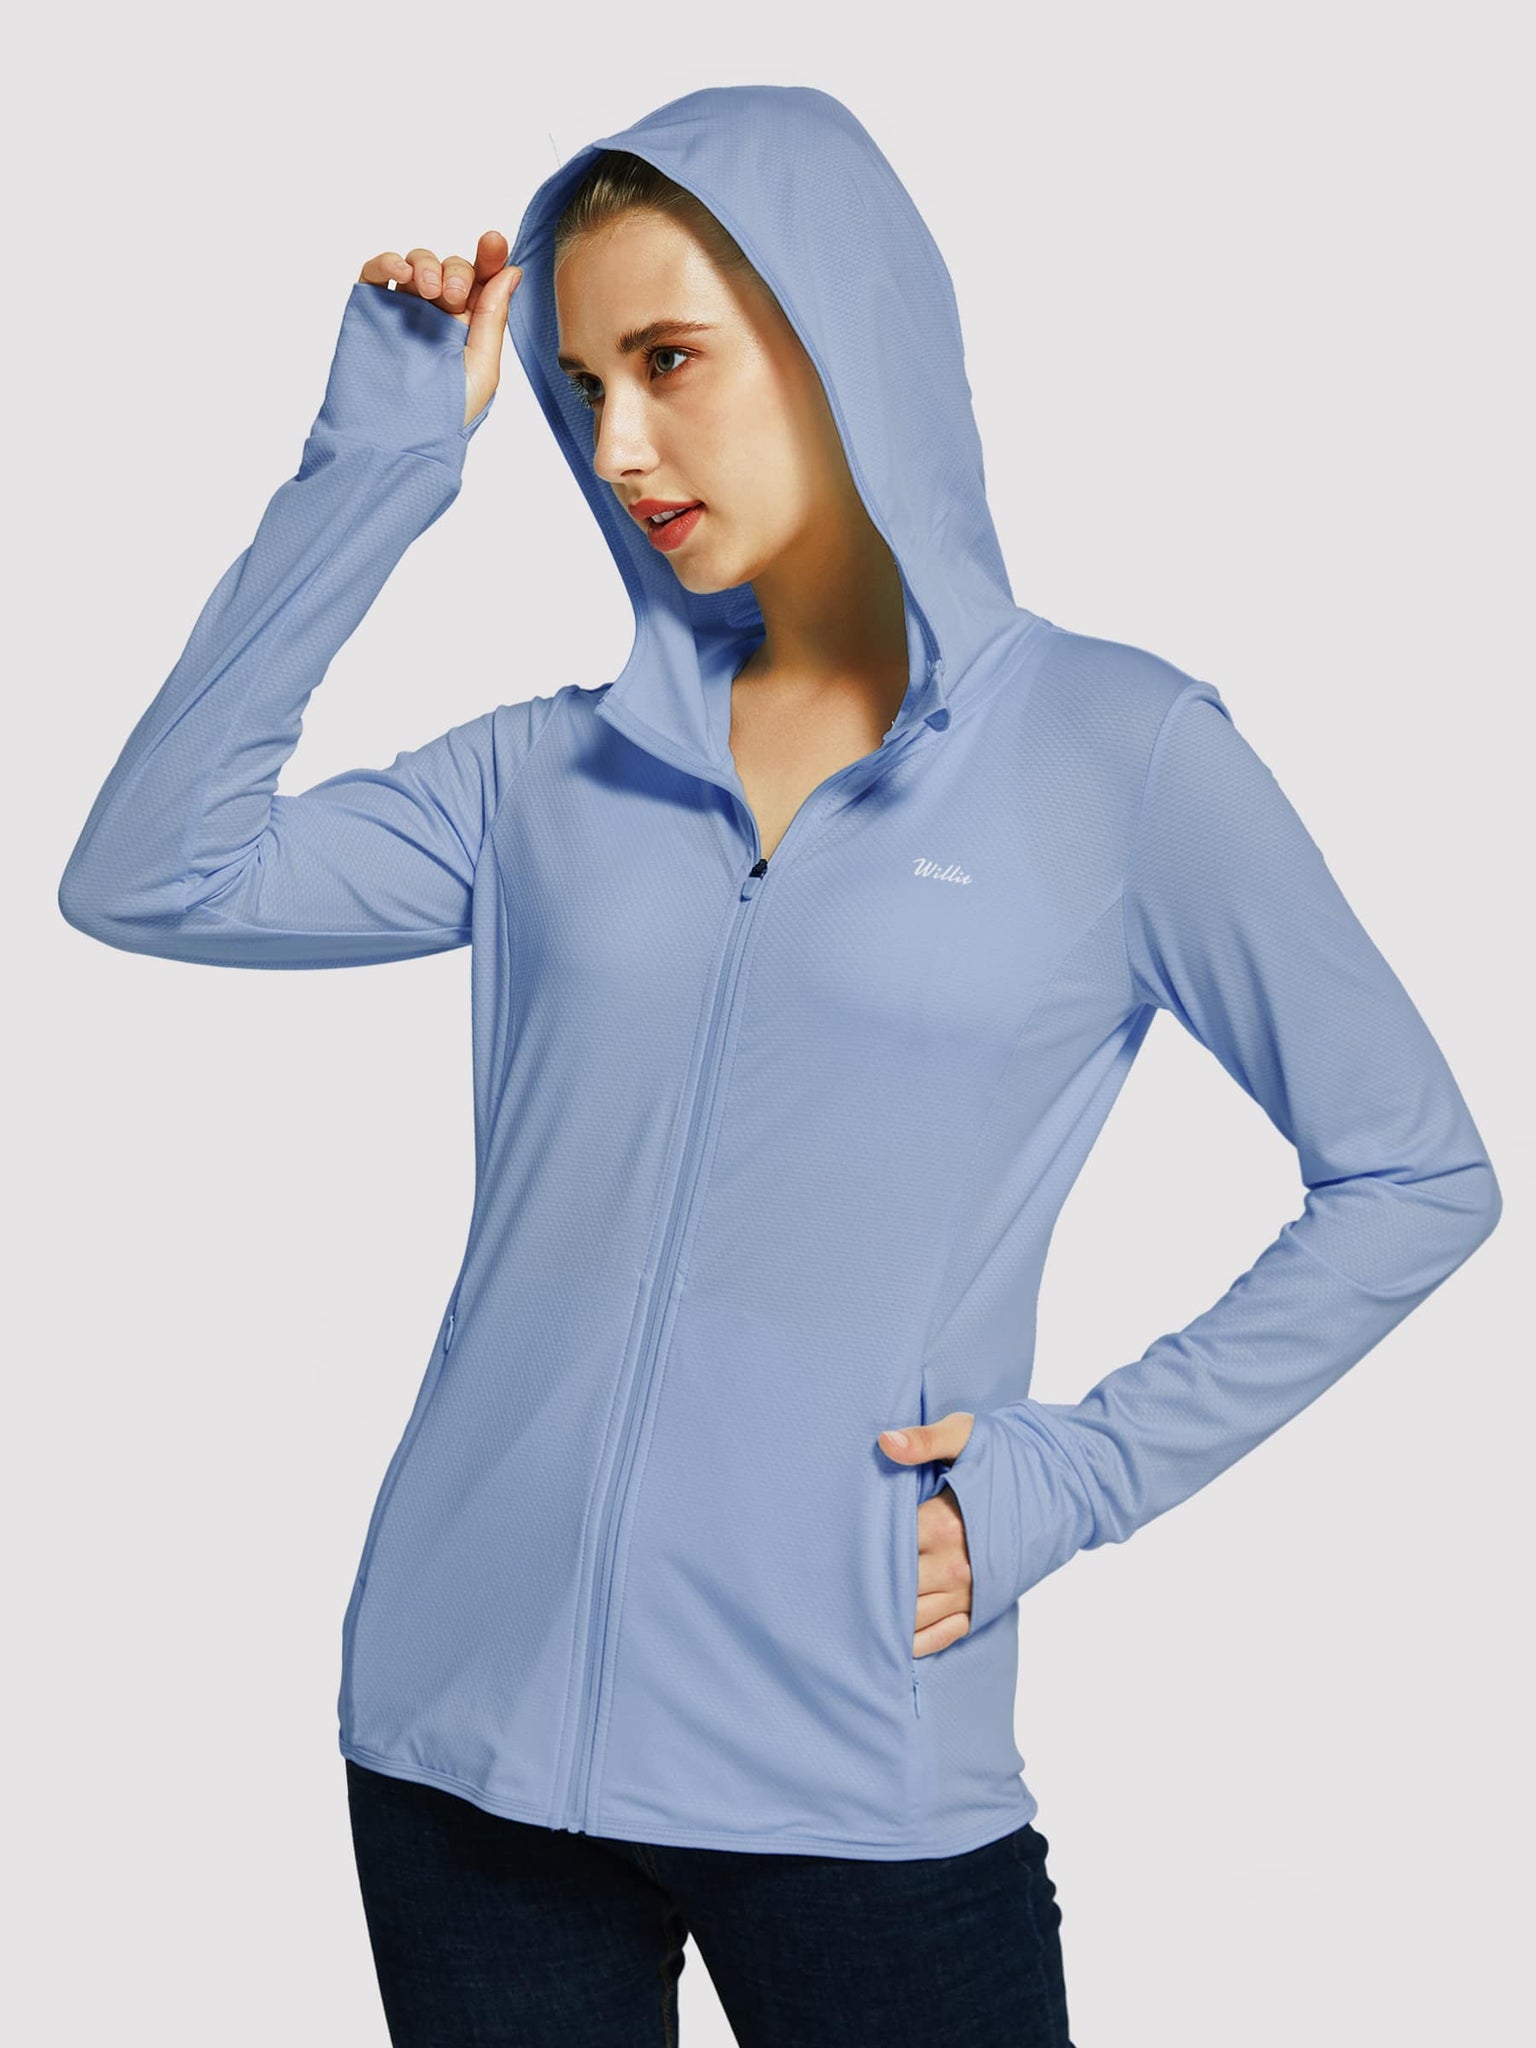 Willit Women's Outdoor Sun Protection Jacket Full Zip_Blue_model1